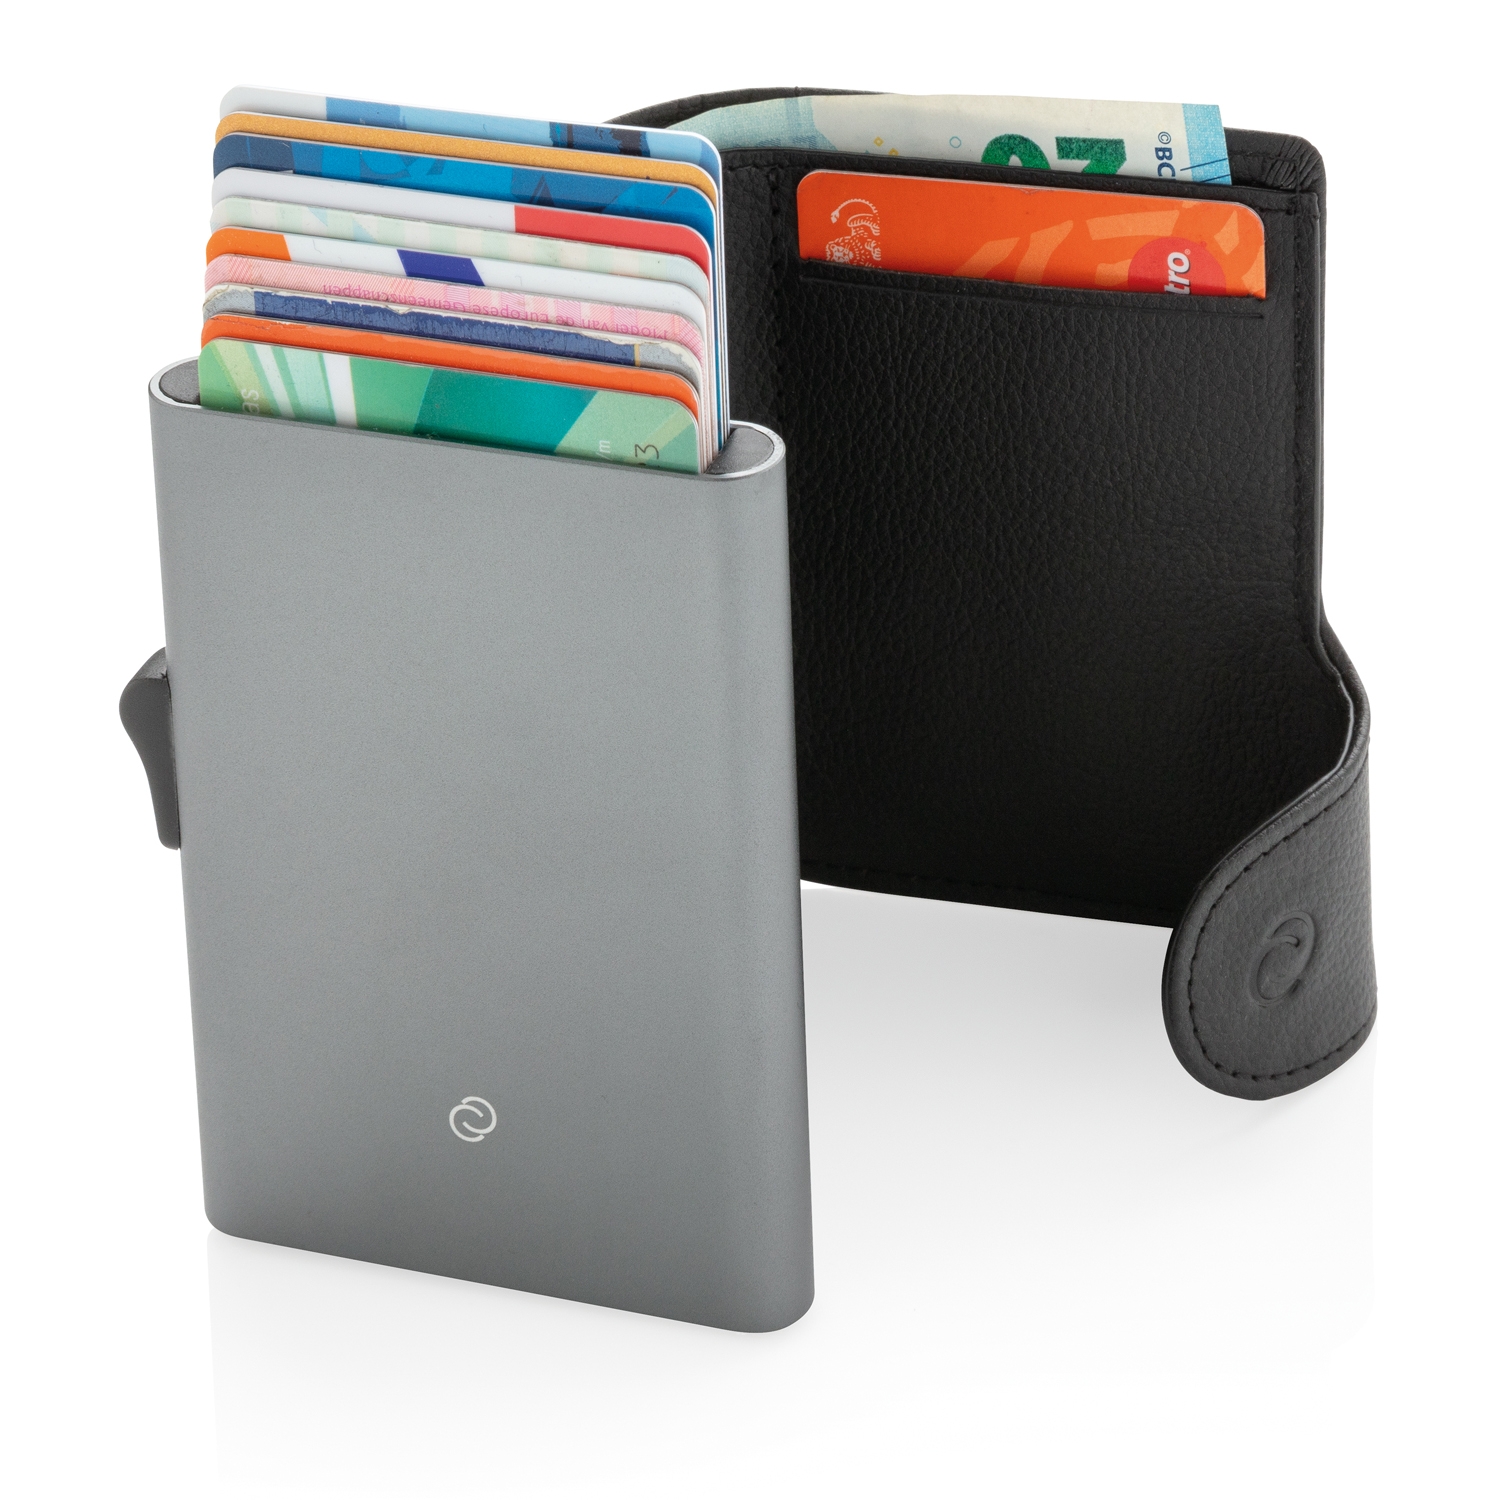 Кошелек XL с держателем для карт C-Secure RFID, черный, алюминий; polyurethane